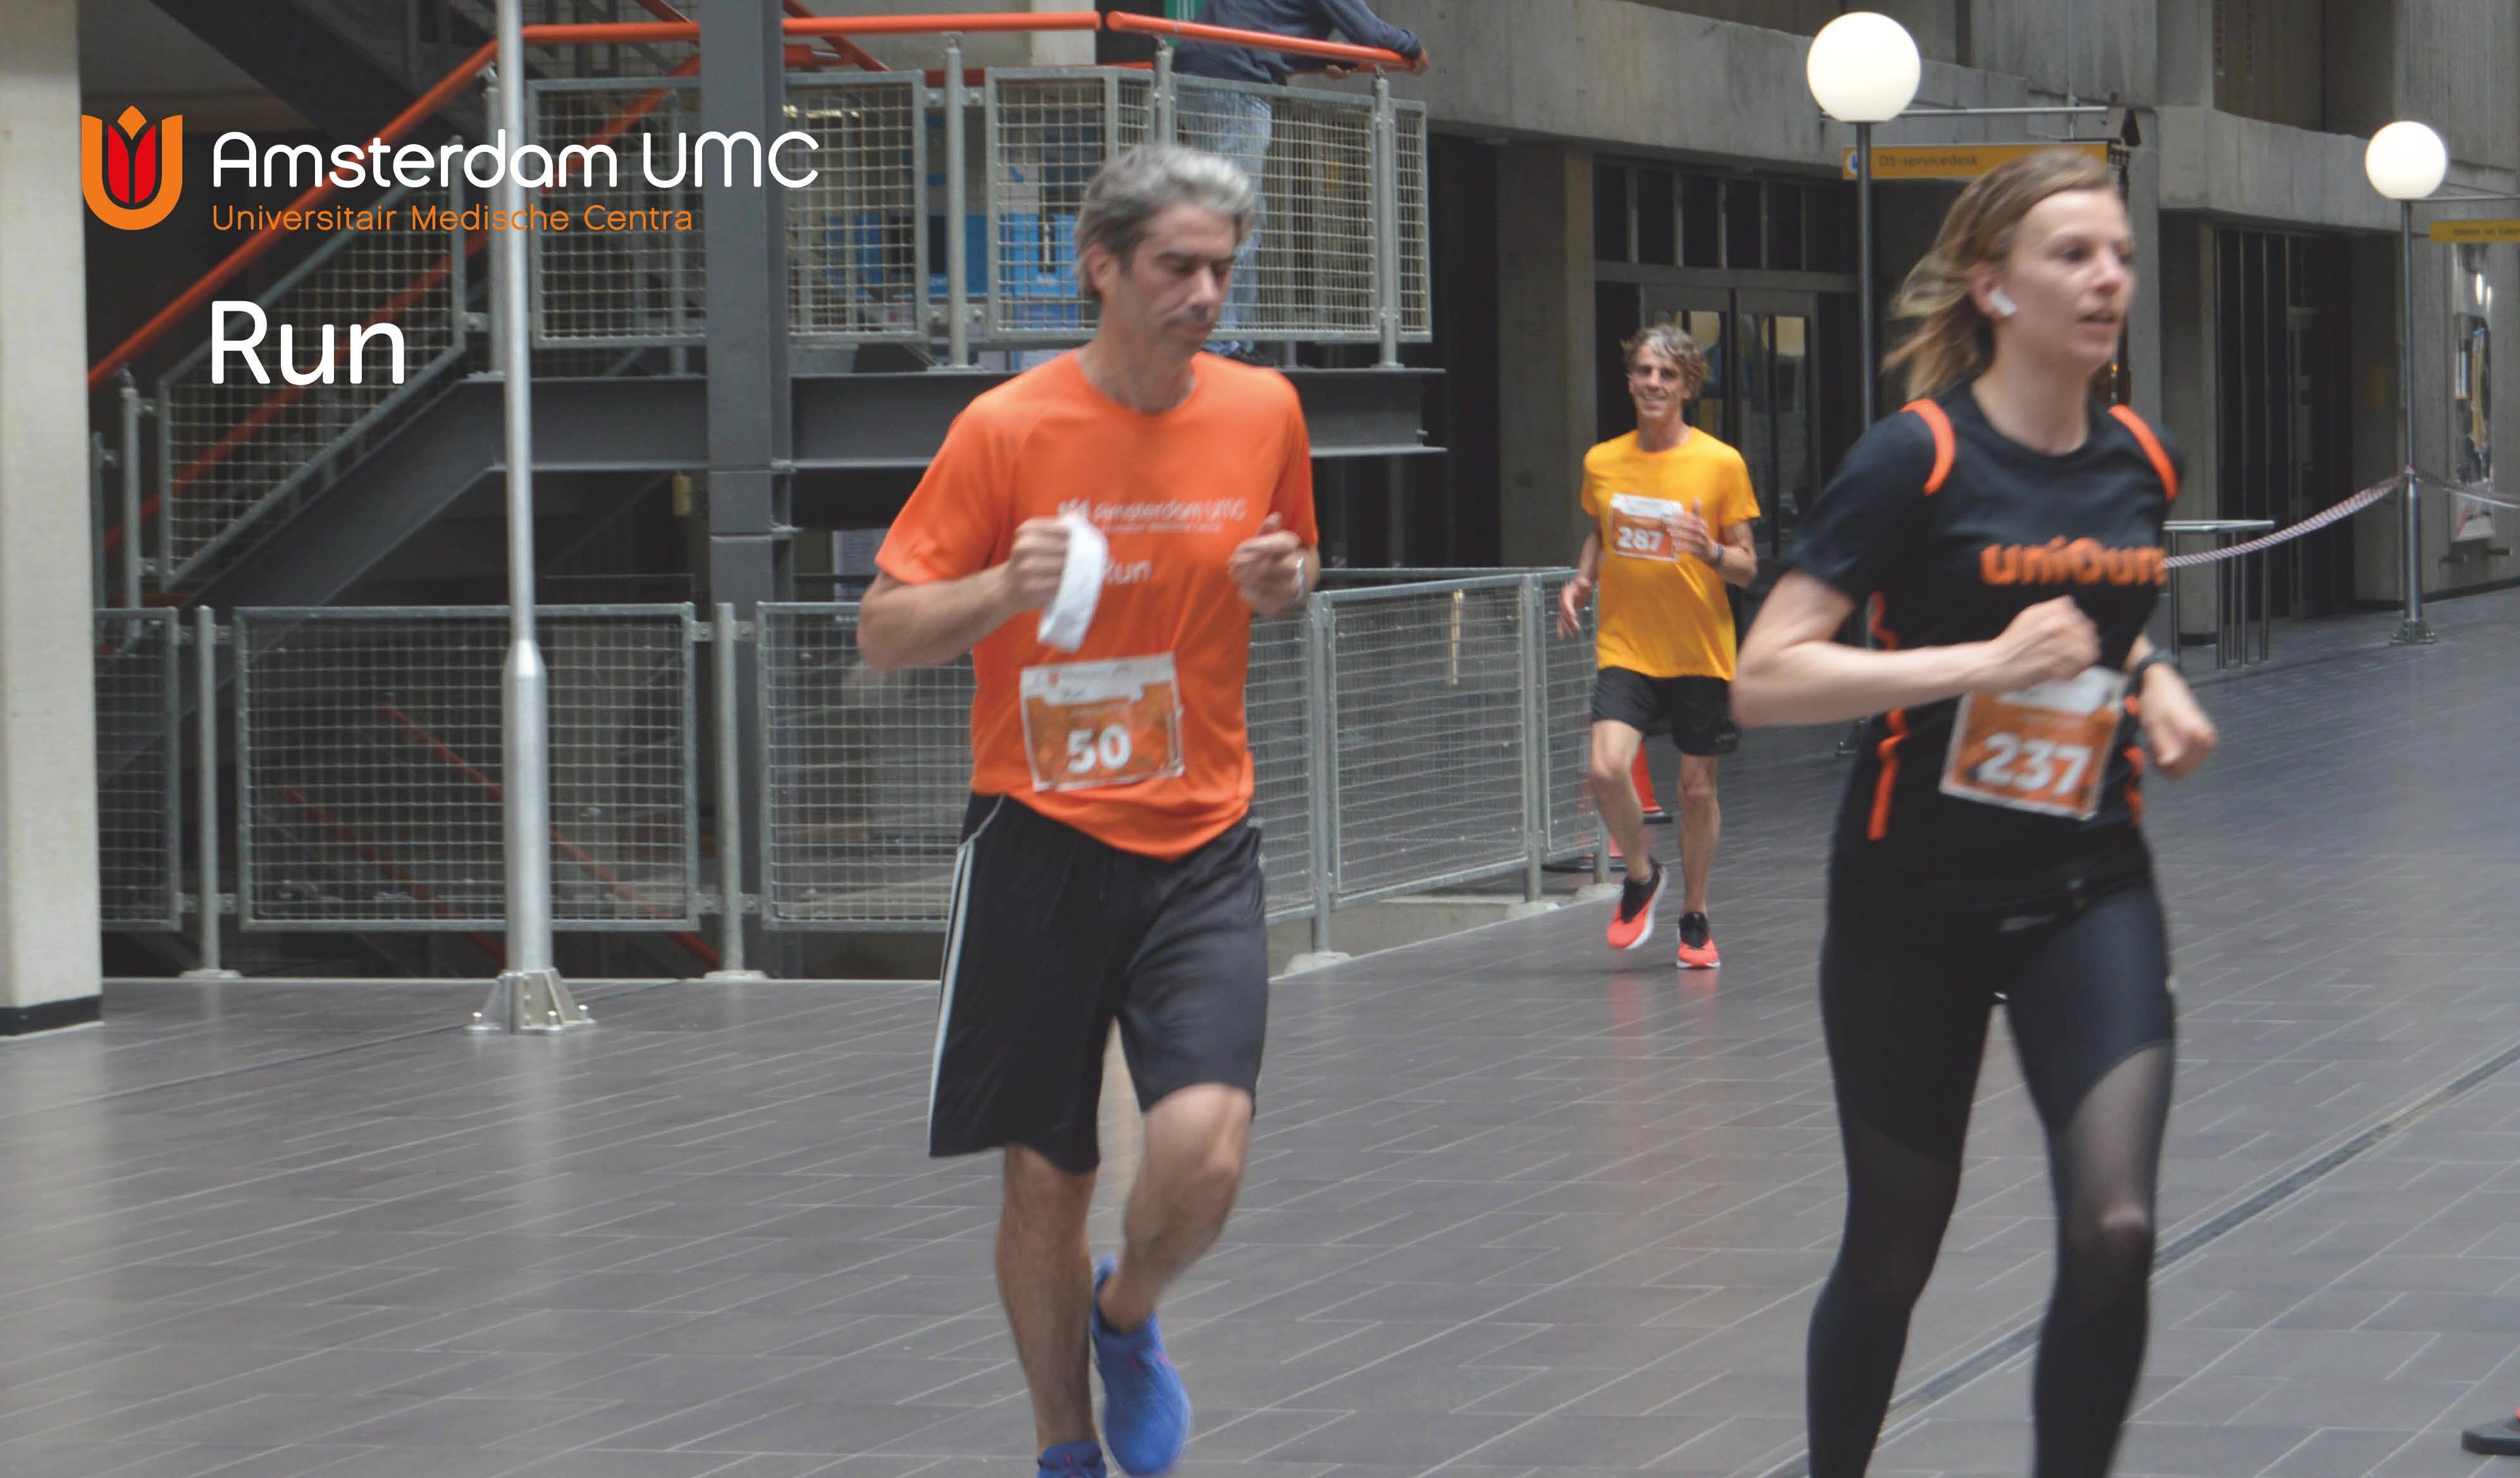 Inschrijving voor Amsterdam UMC Run geopend